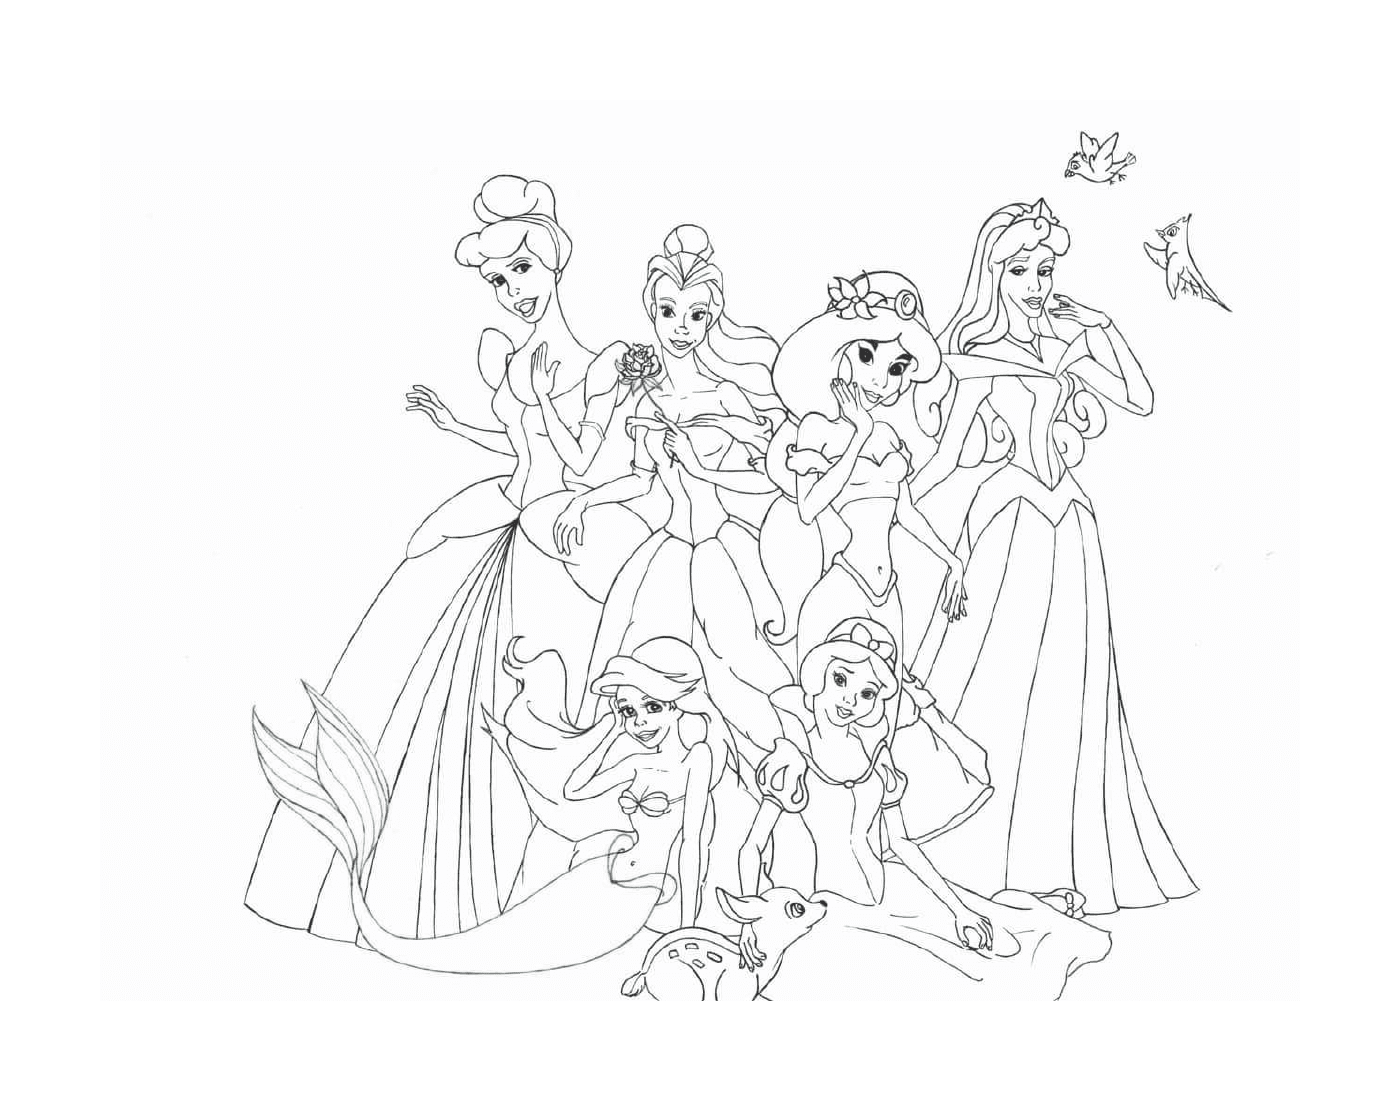  Eine Gruppe Disney Prinzessinnen sitzen und stehen zusammen 